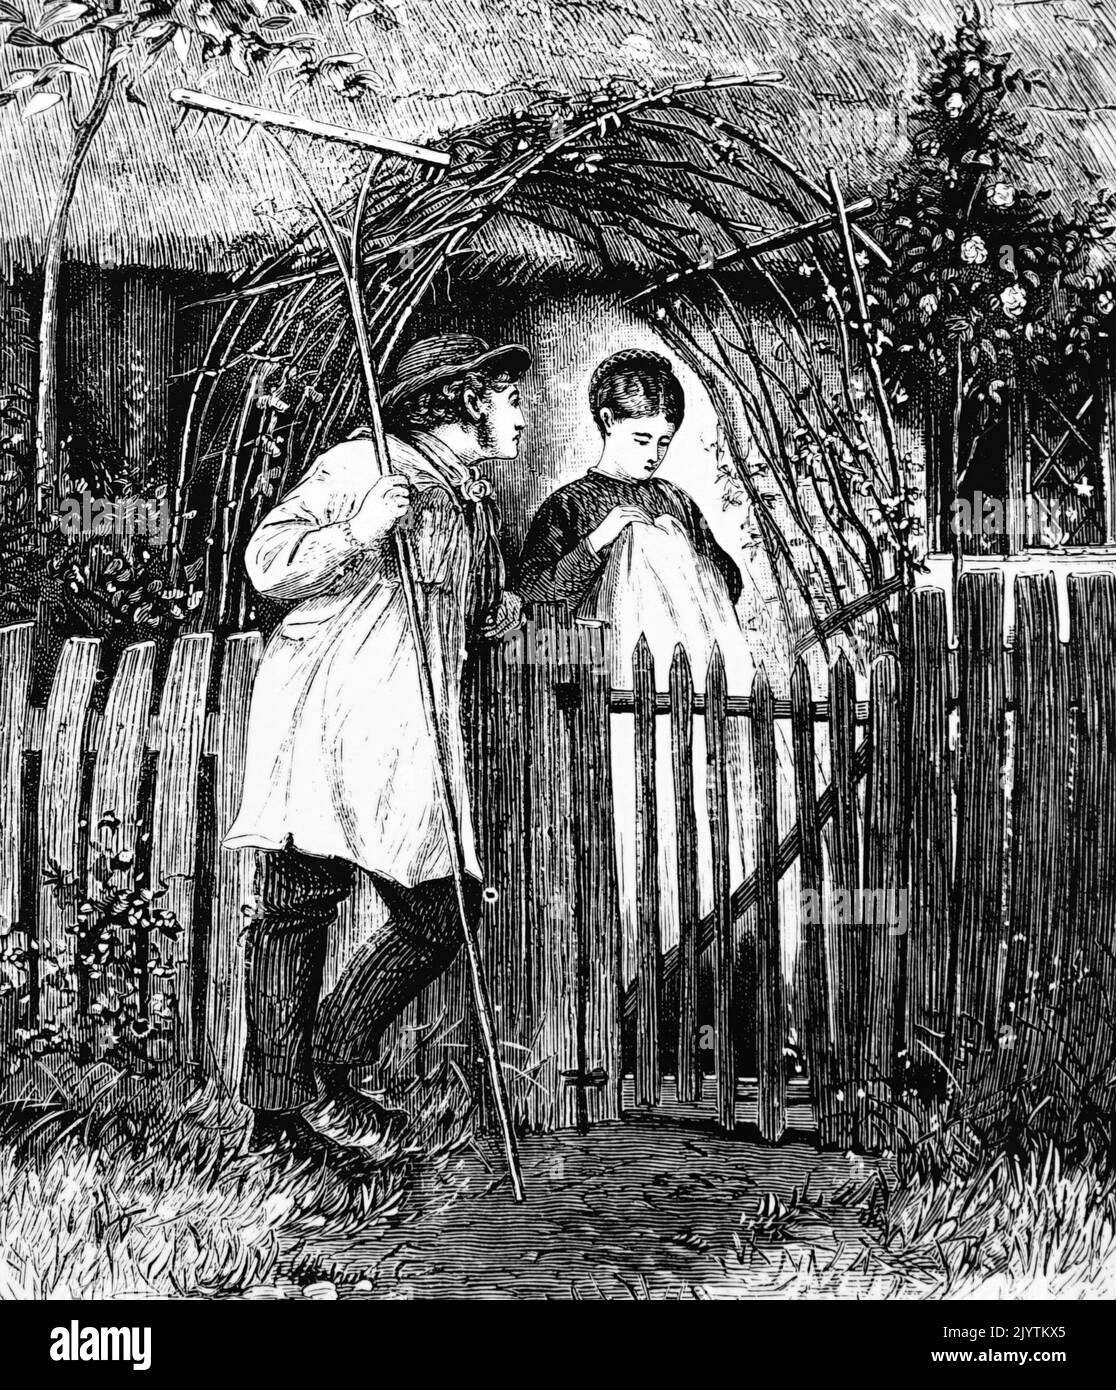 Illustration représentant un ouvrier agricole dans une marmoise courtant son amant. Illustré par Henry Woods (1846-1921), peintre et illustrateur anglais. Daté du 19th siècle Banque D'Images